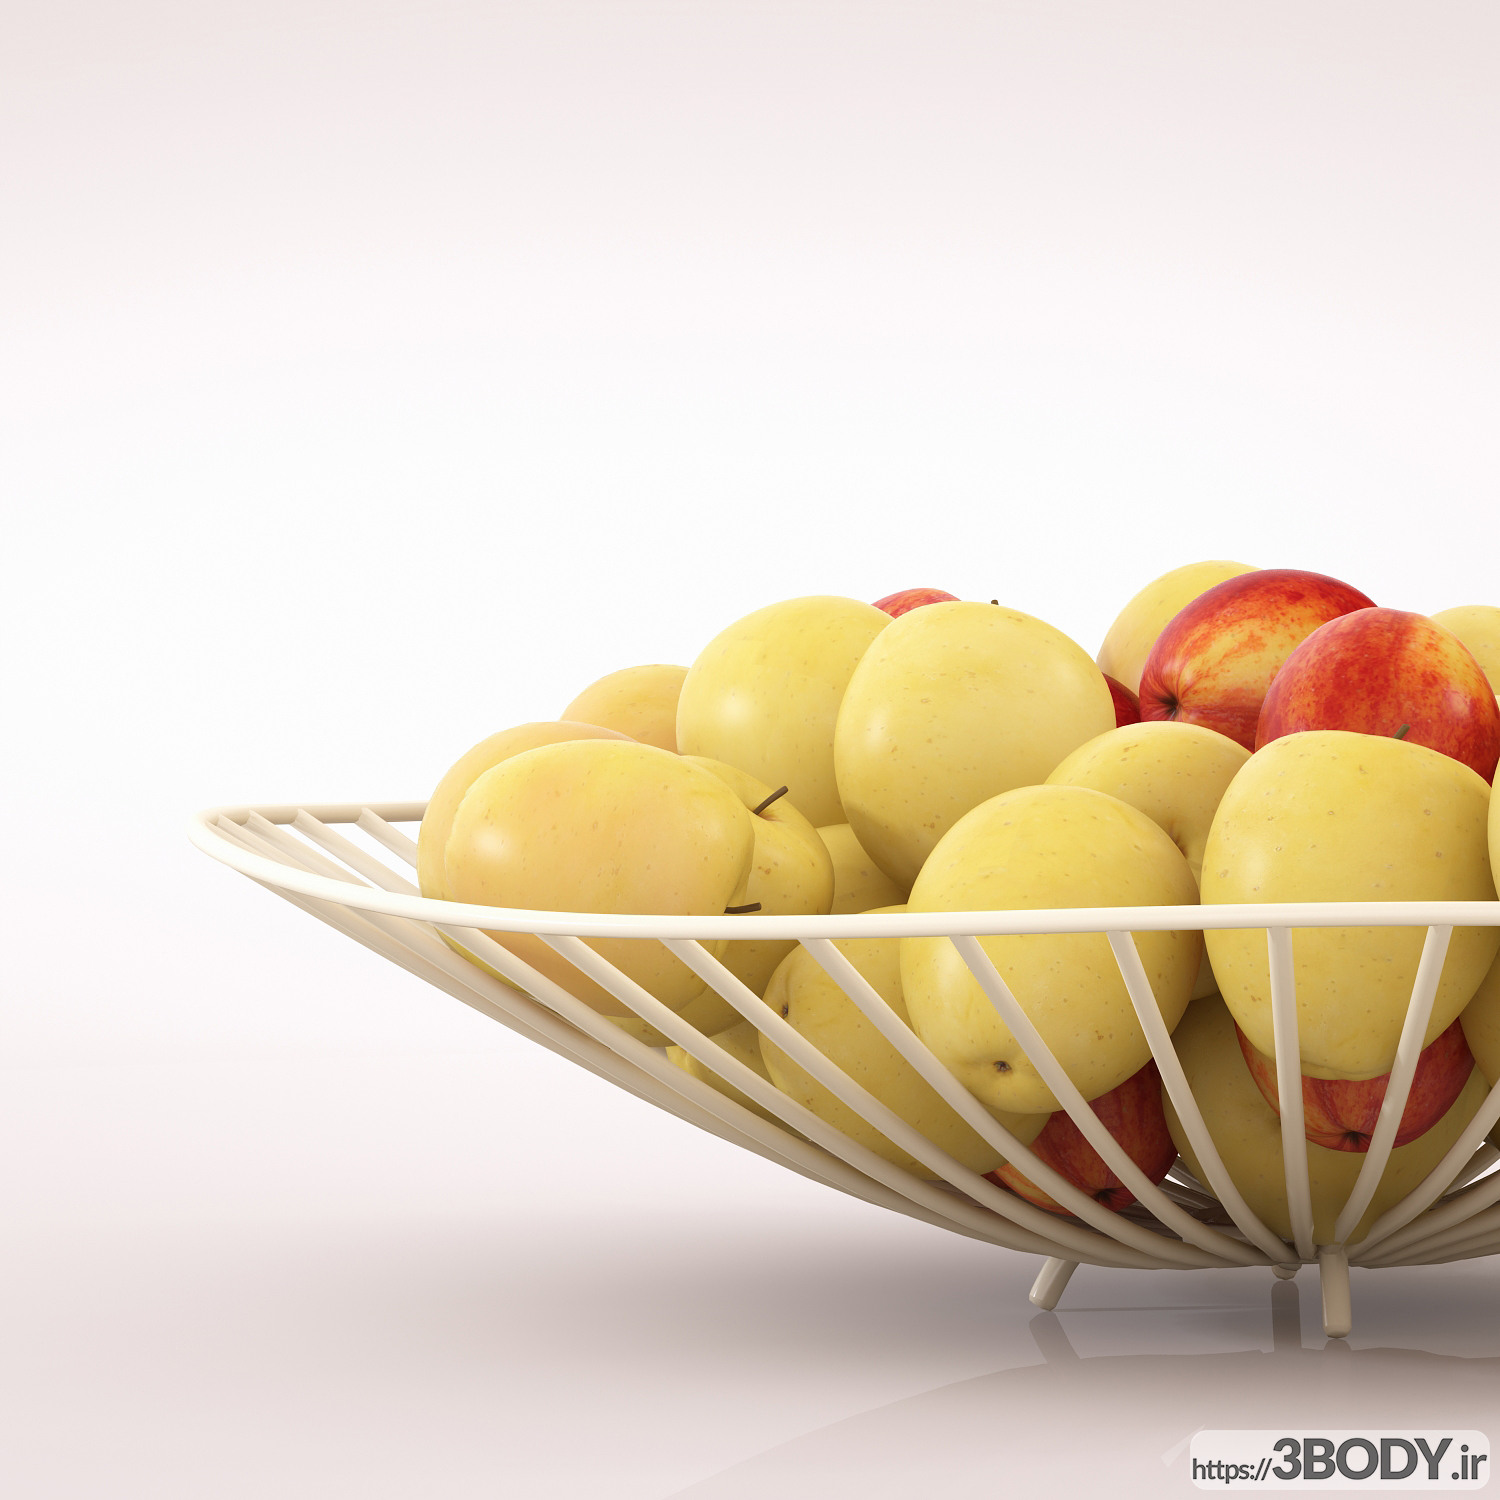 مدل سه بعدی جامیوه ای با سیب عکس 2